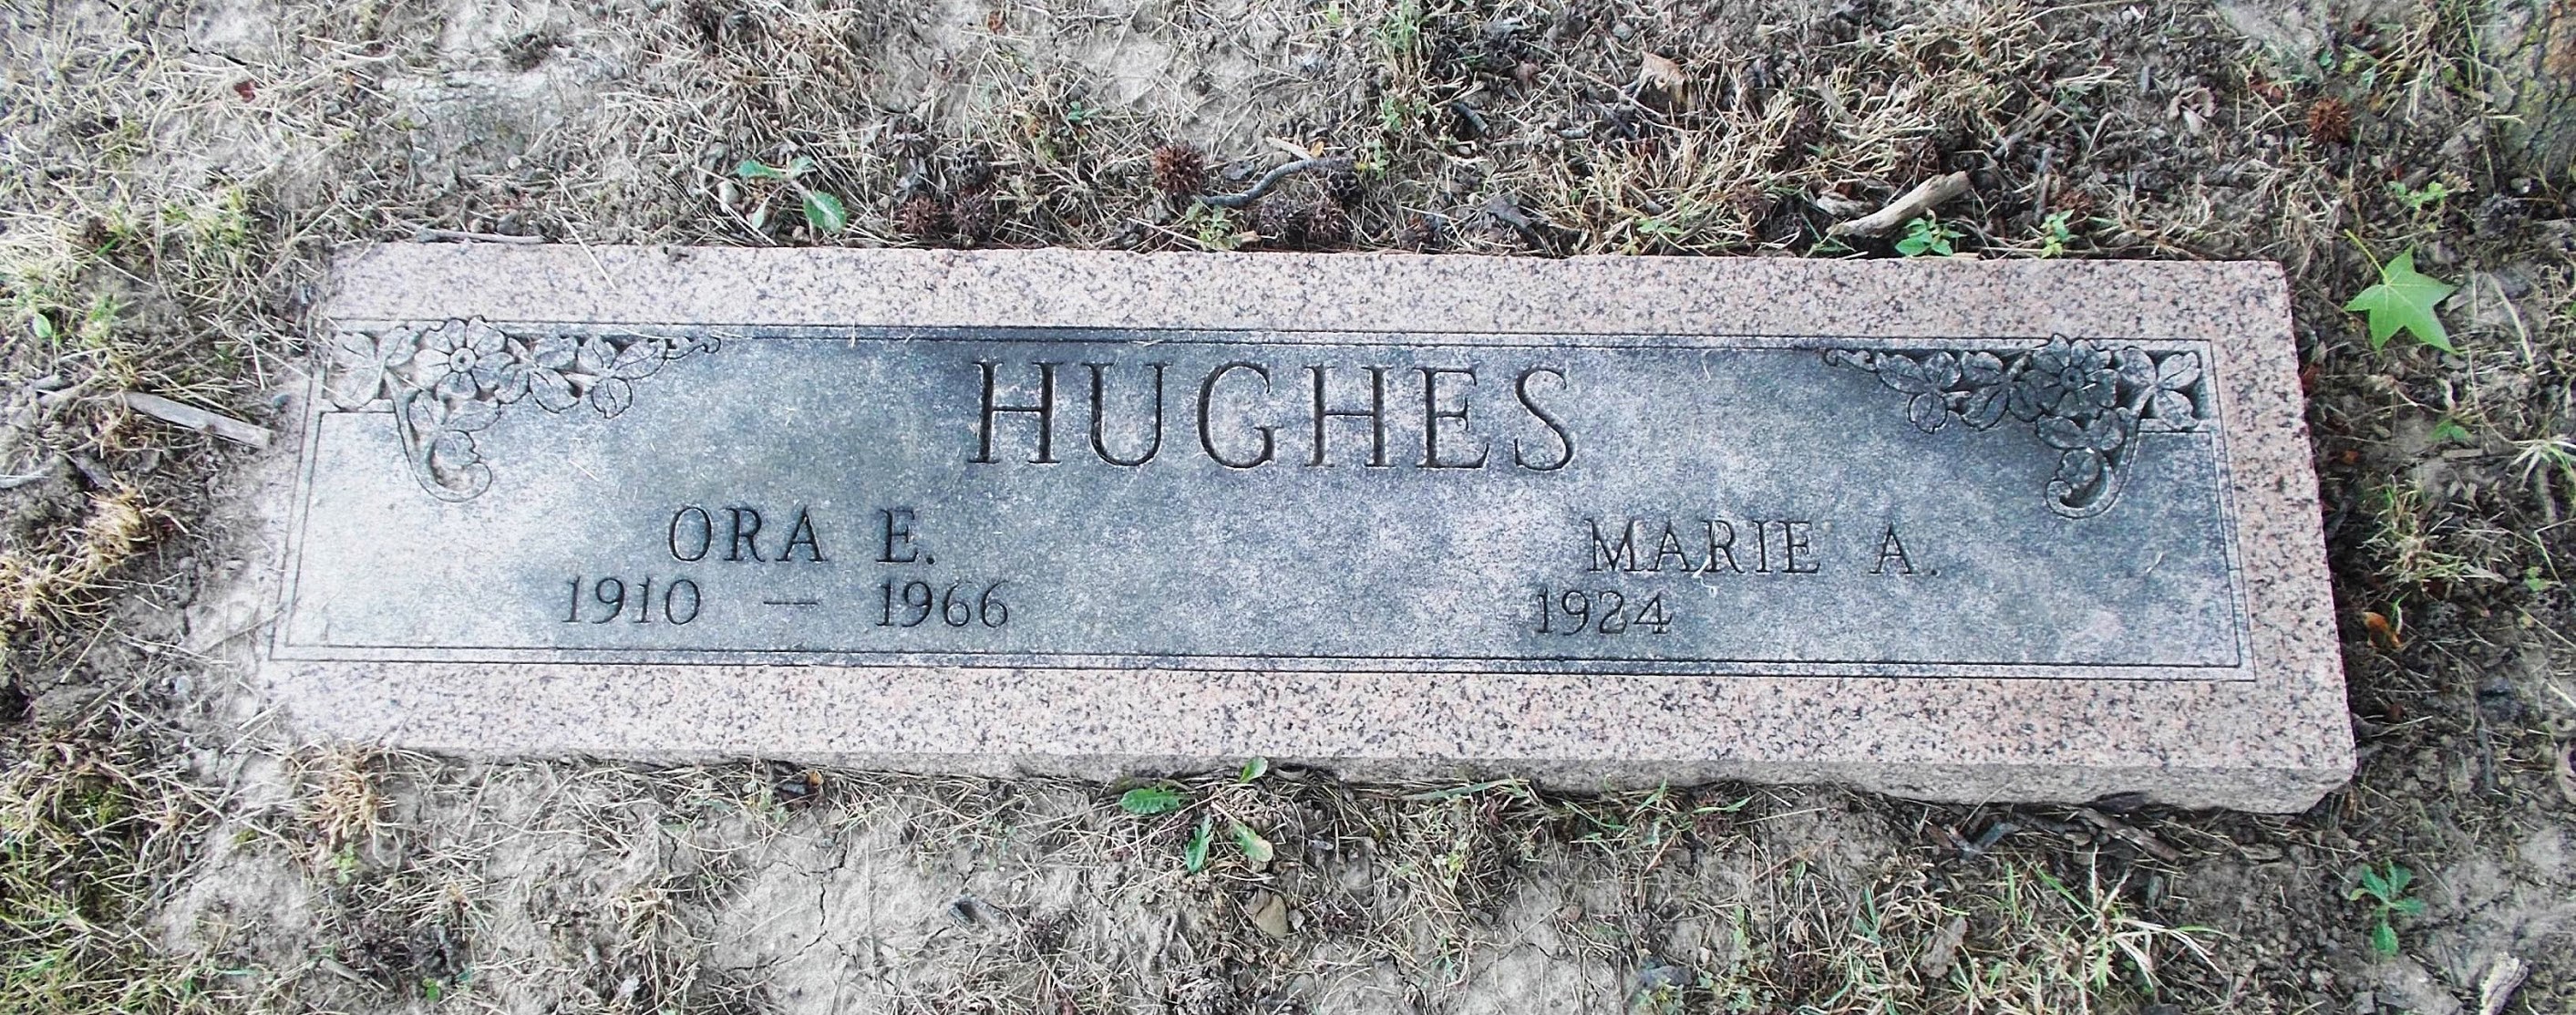 Ora E Hughes